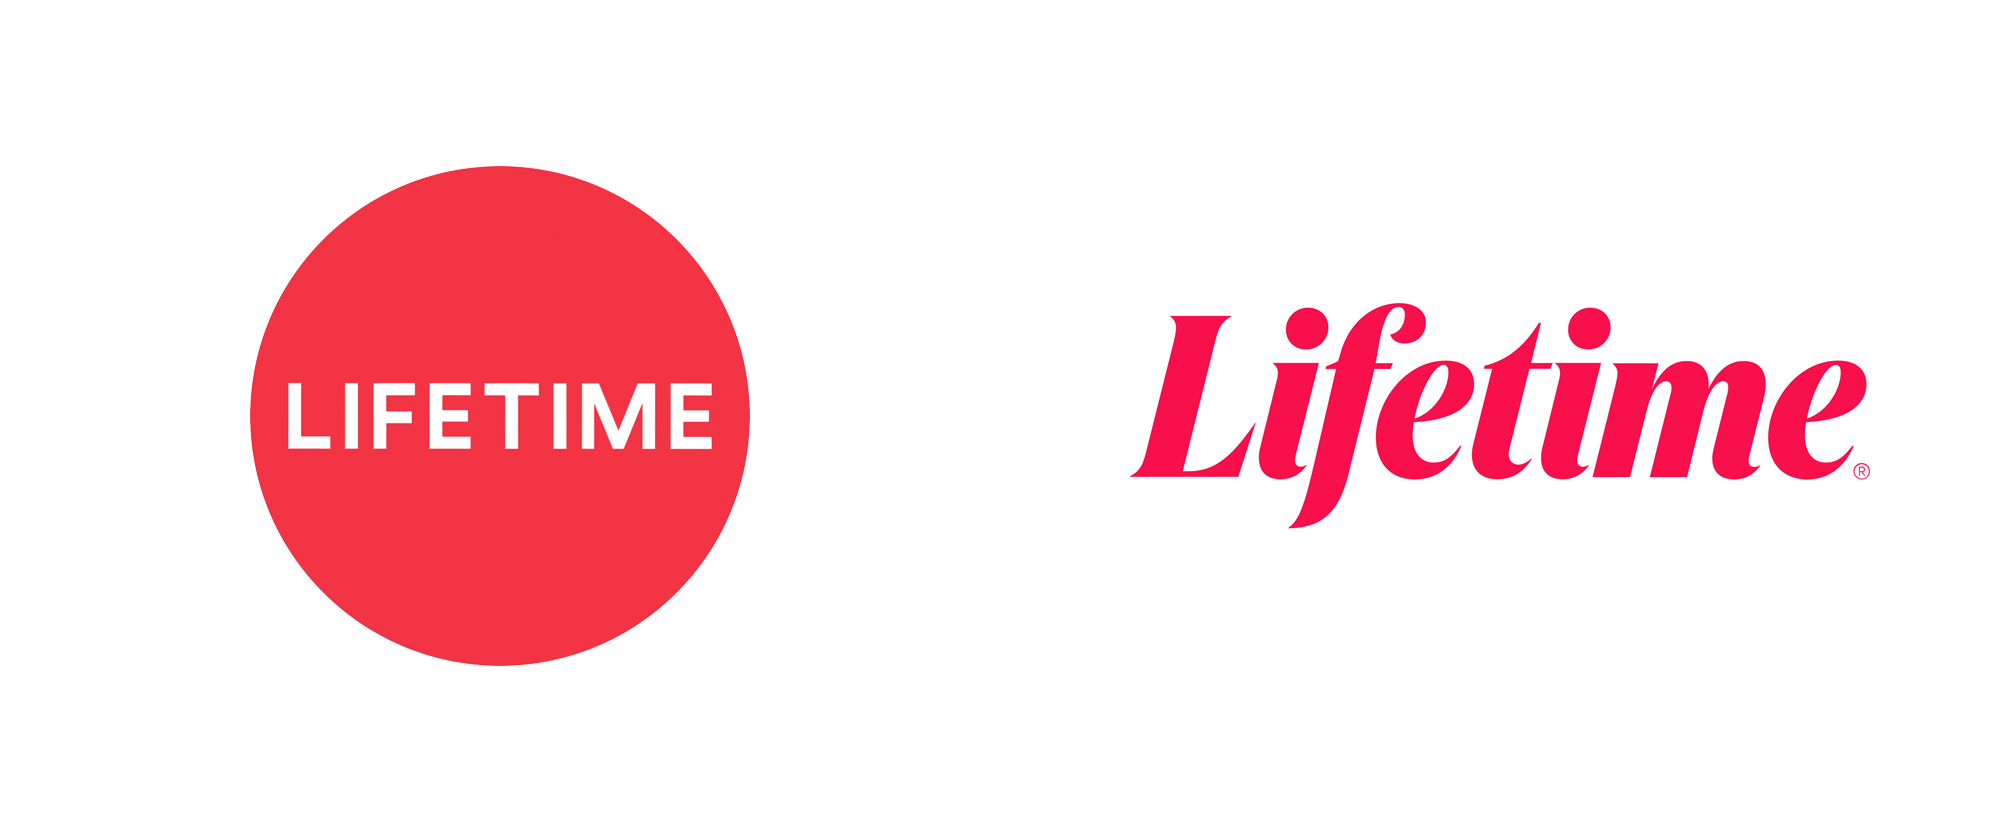 Brand New New Logo for Lifetime